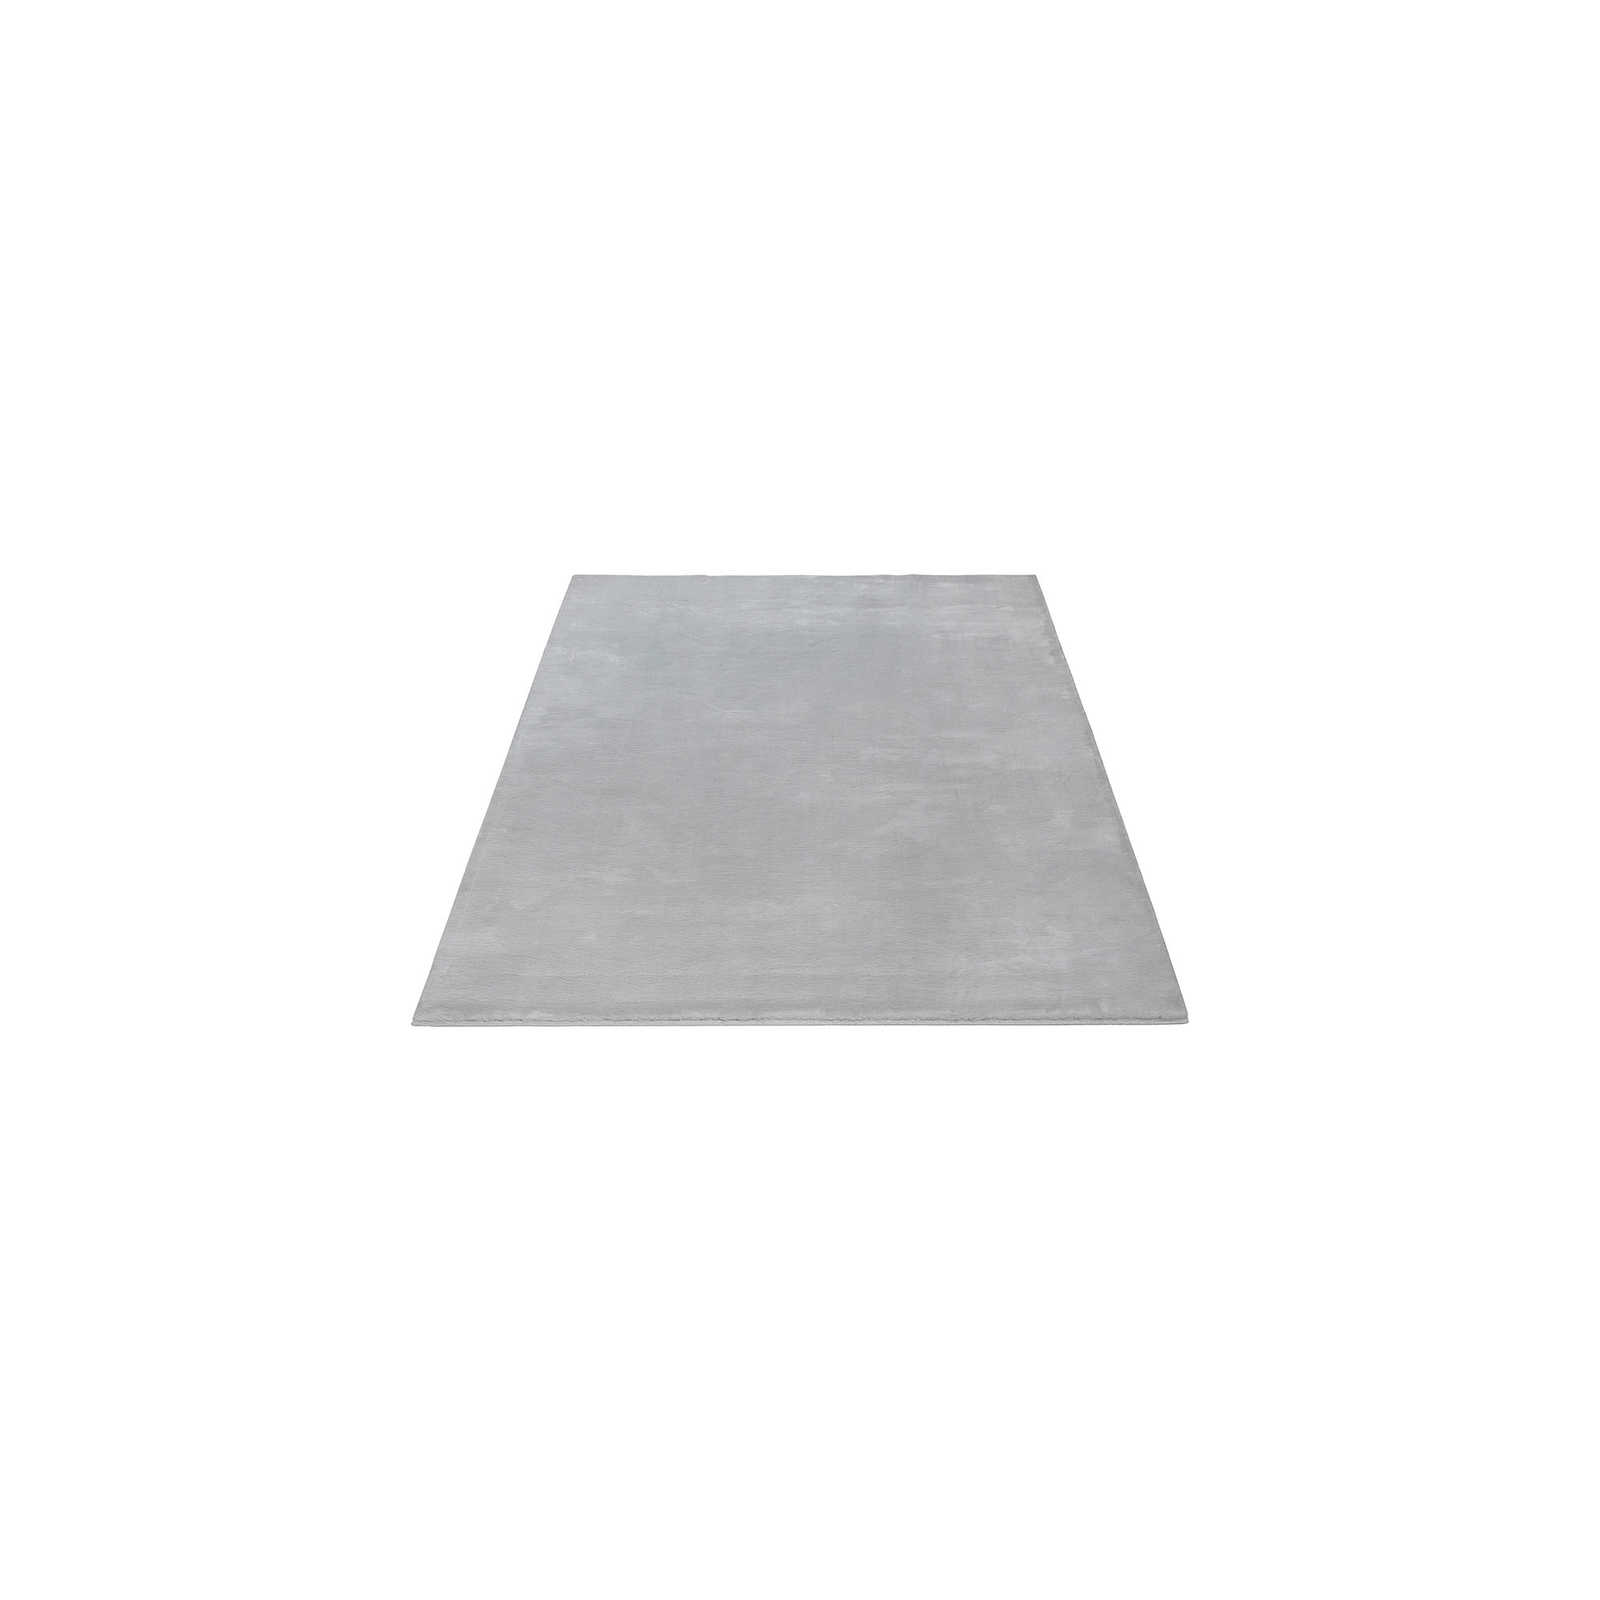 Kuscheliger Hochflor Teppich in sanften Grau – 150 x 80 cm
